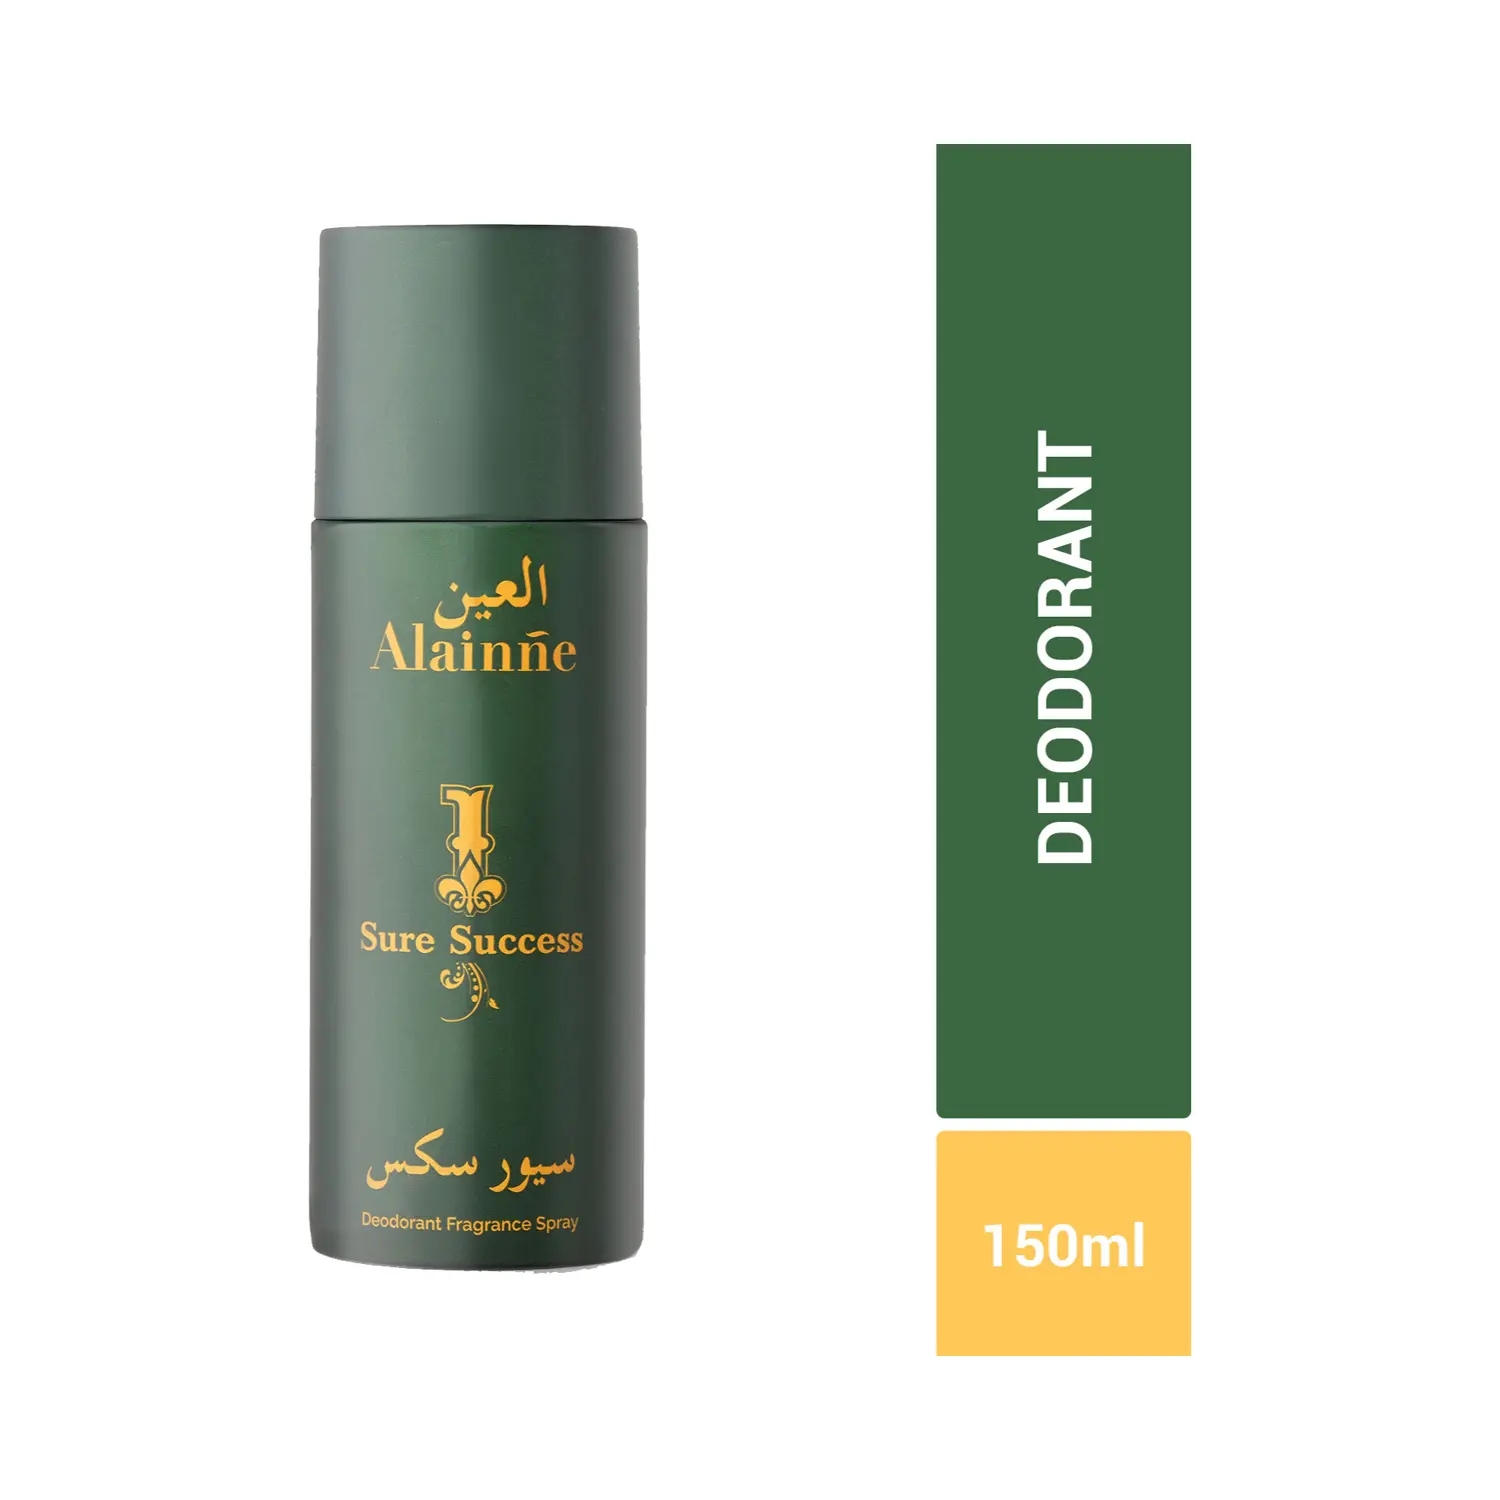 Alainne | Alainne Sure Success Deodorant Body Spray - (150ml)